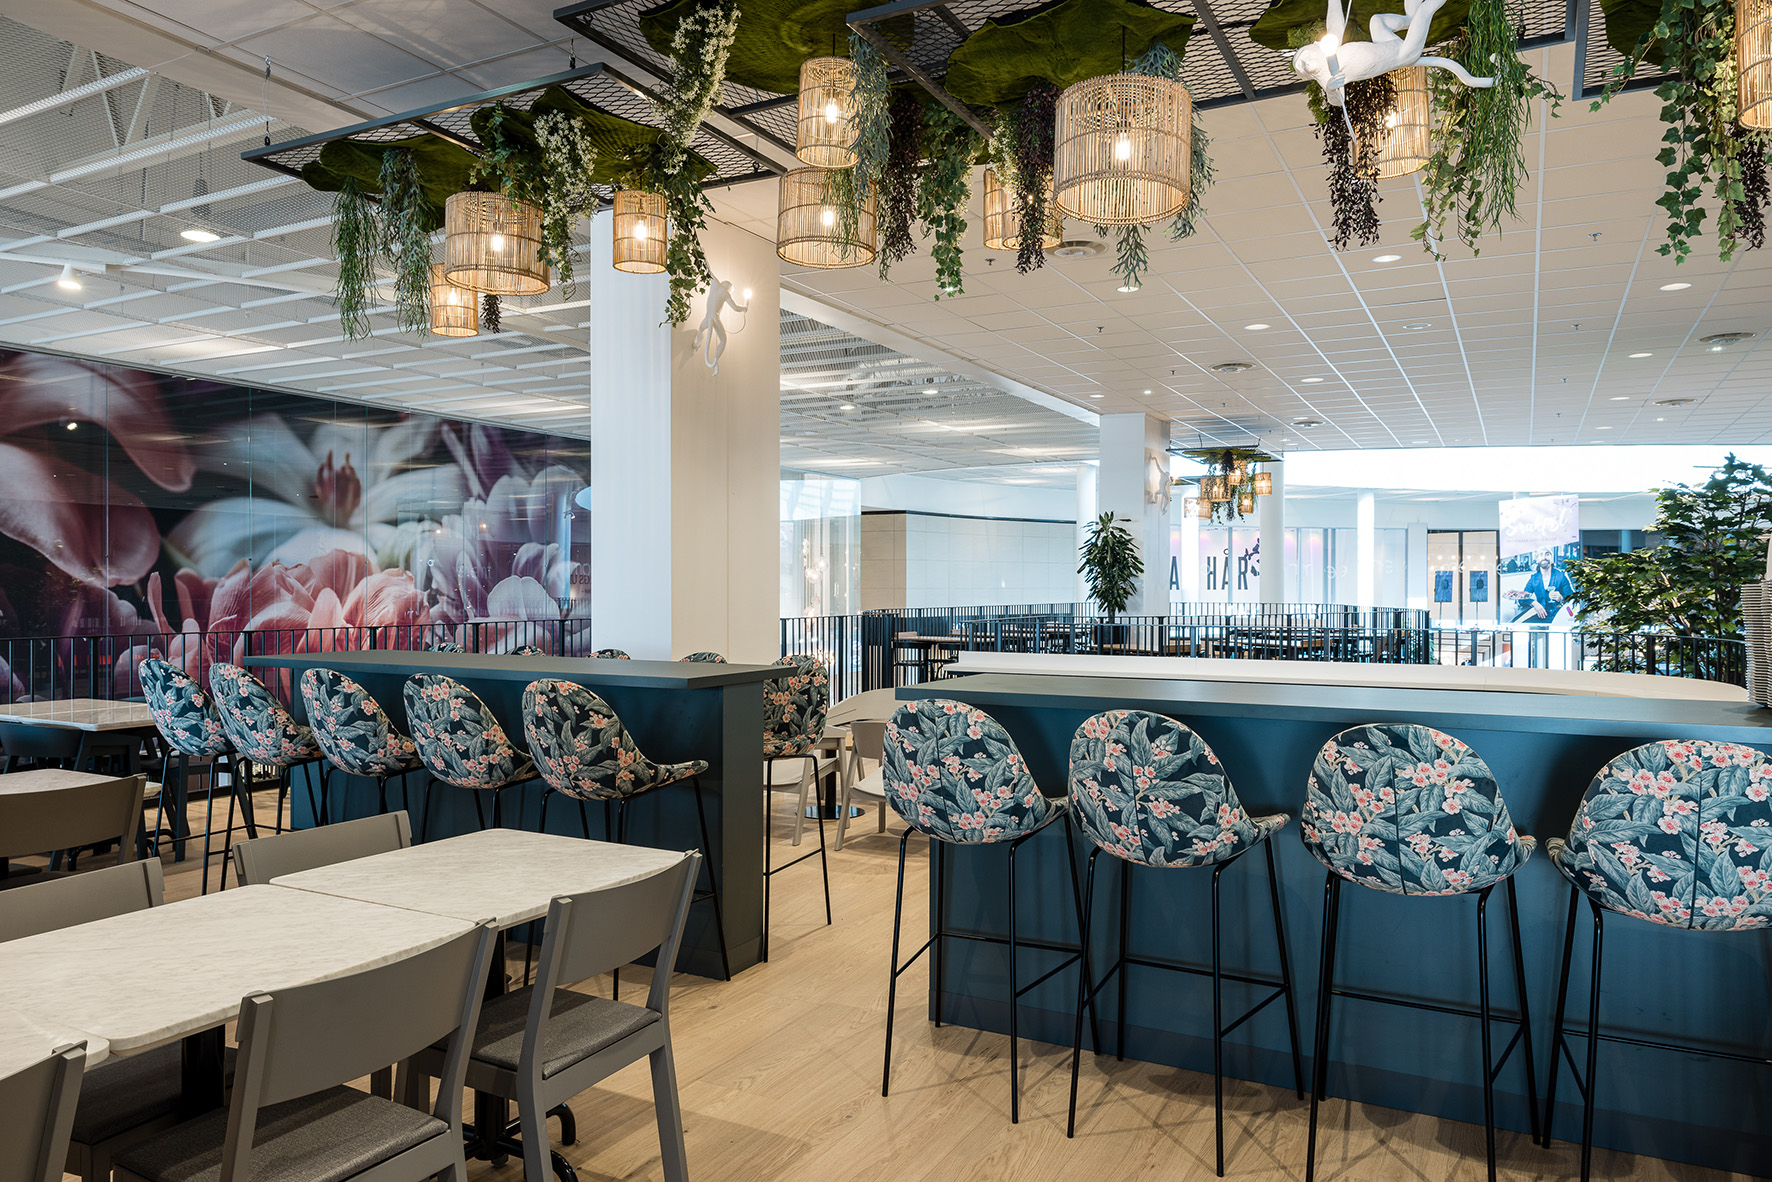 Väla restaurangtorg entresol barstol stol grå gärsnäs hängande växter